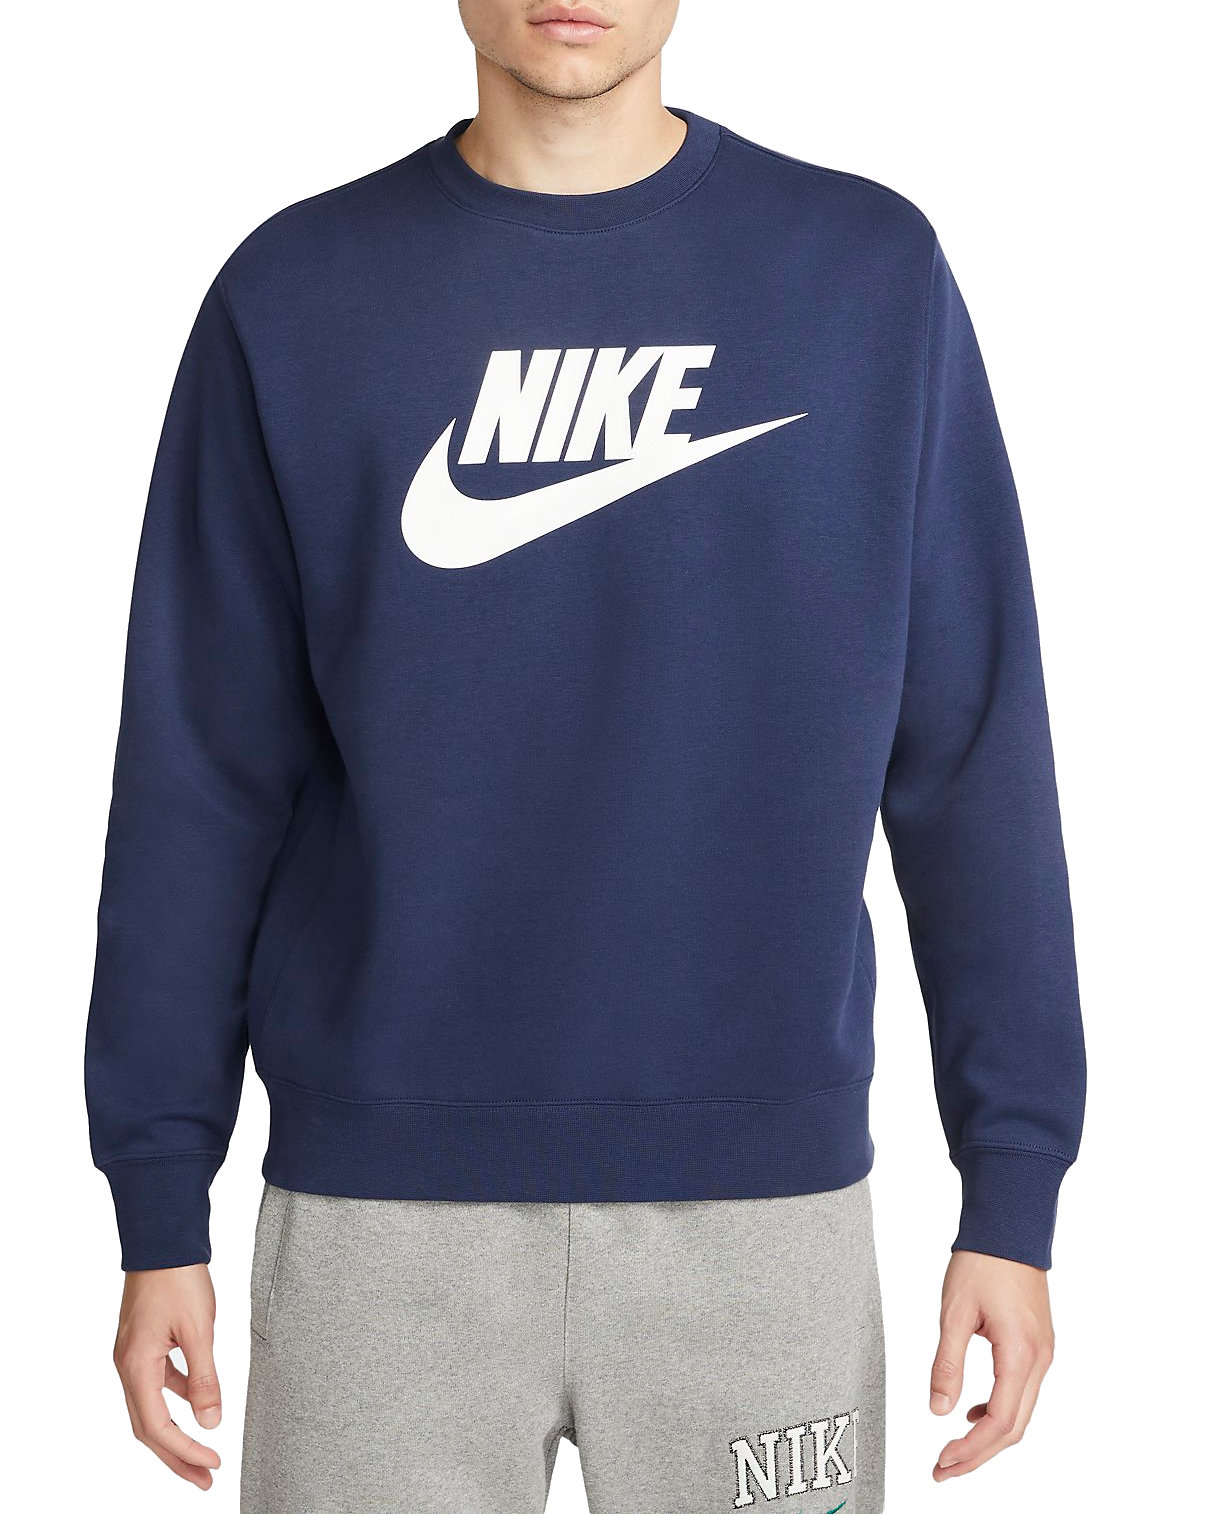 Sweatshirt Nike Sportswear Club Fleece Men's Graphic Crew